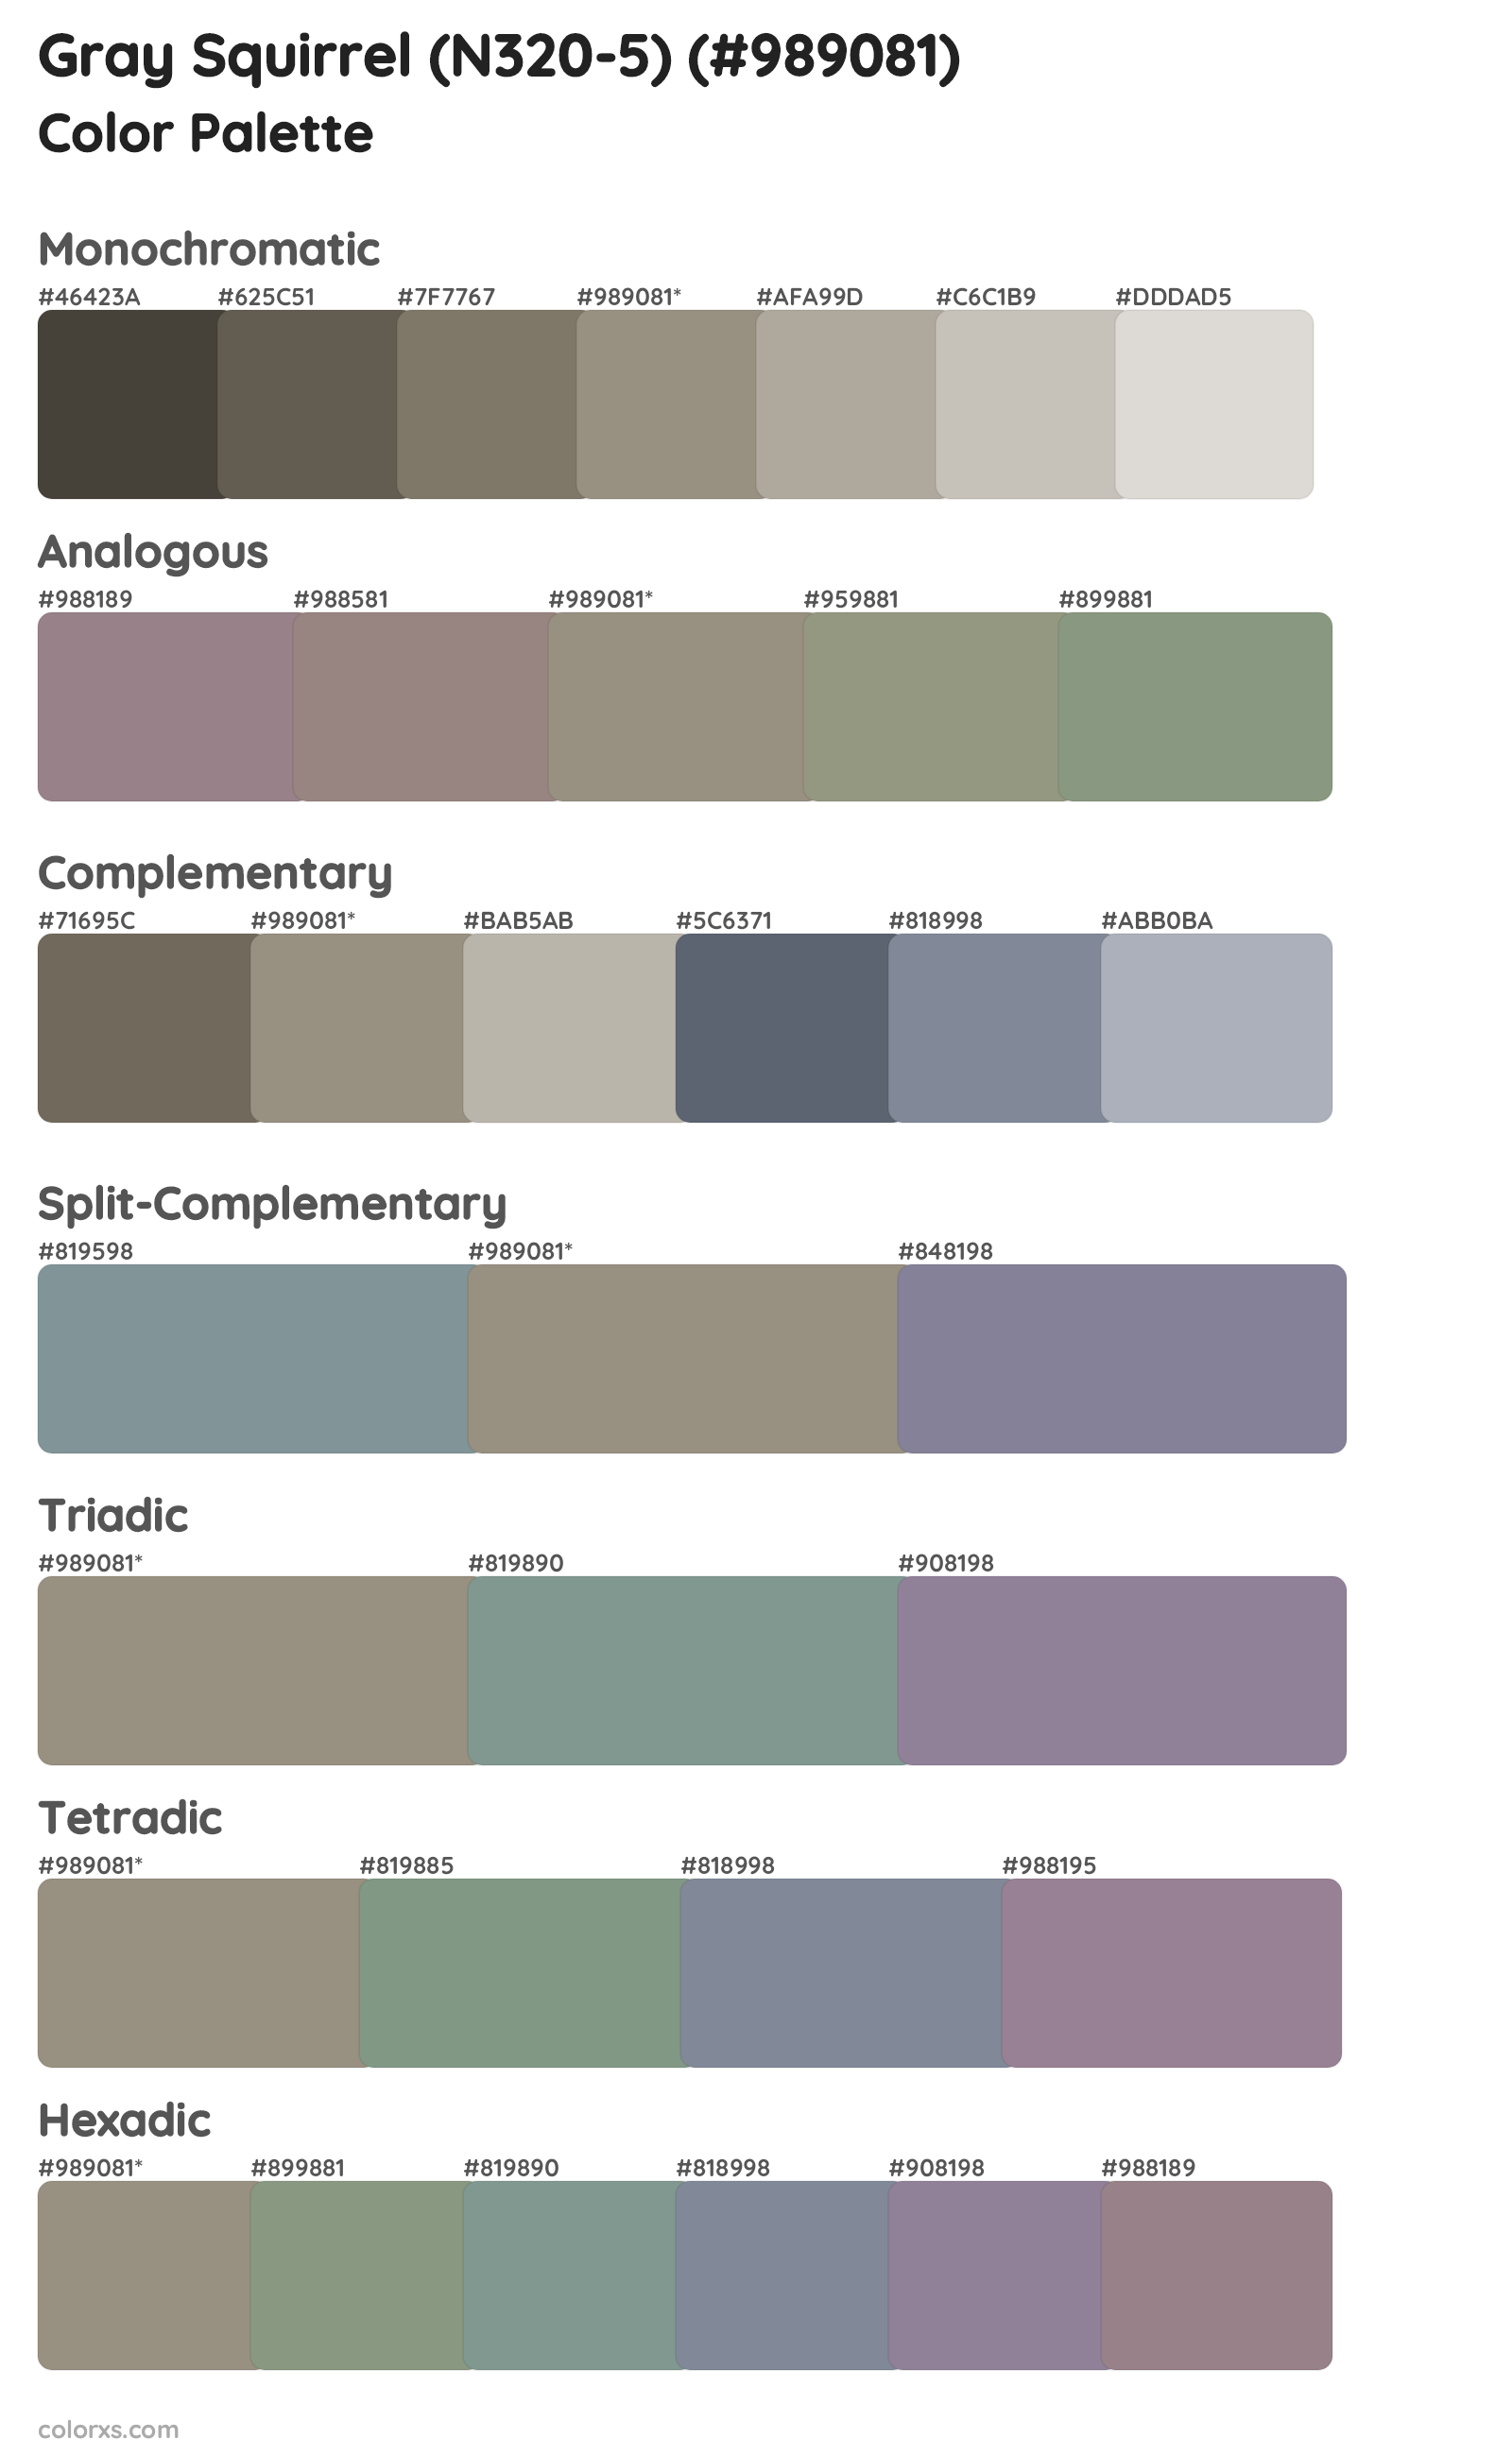 Gray Squirrel (N320-5) Color Scheme Palettes